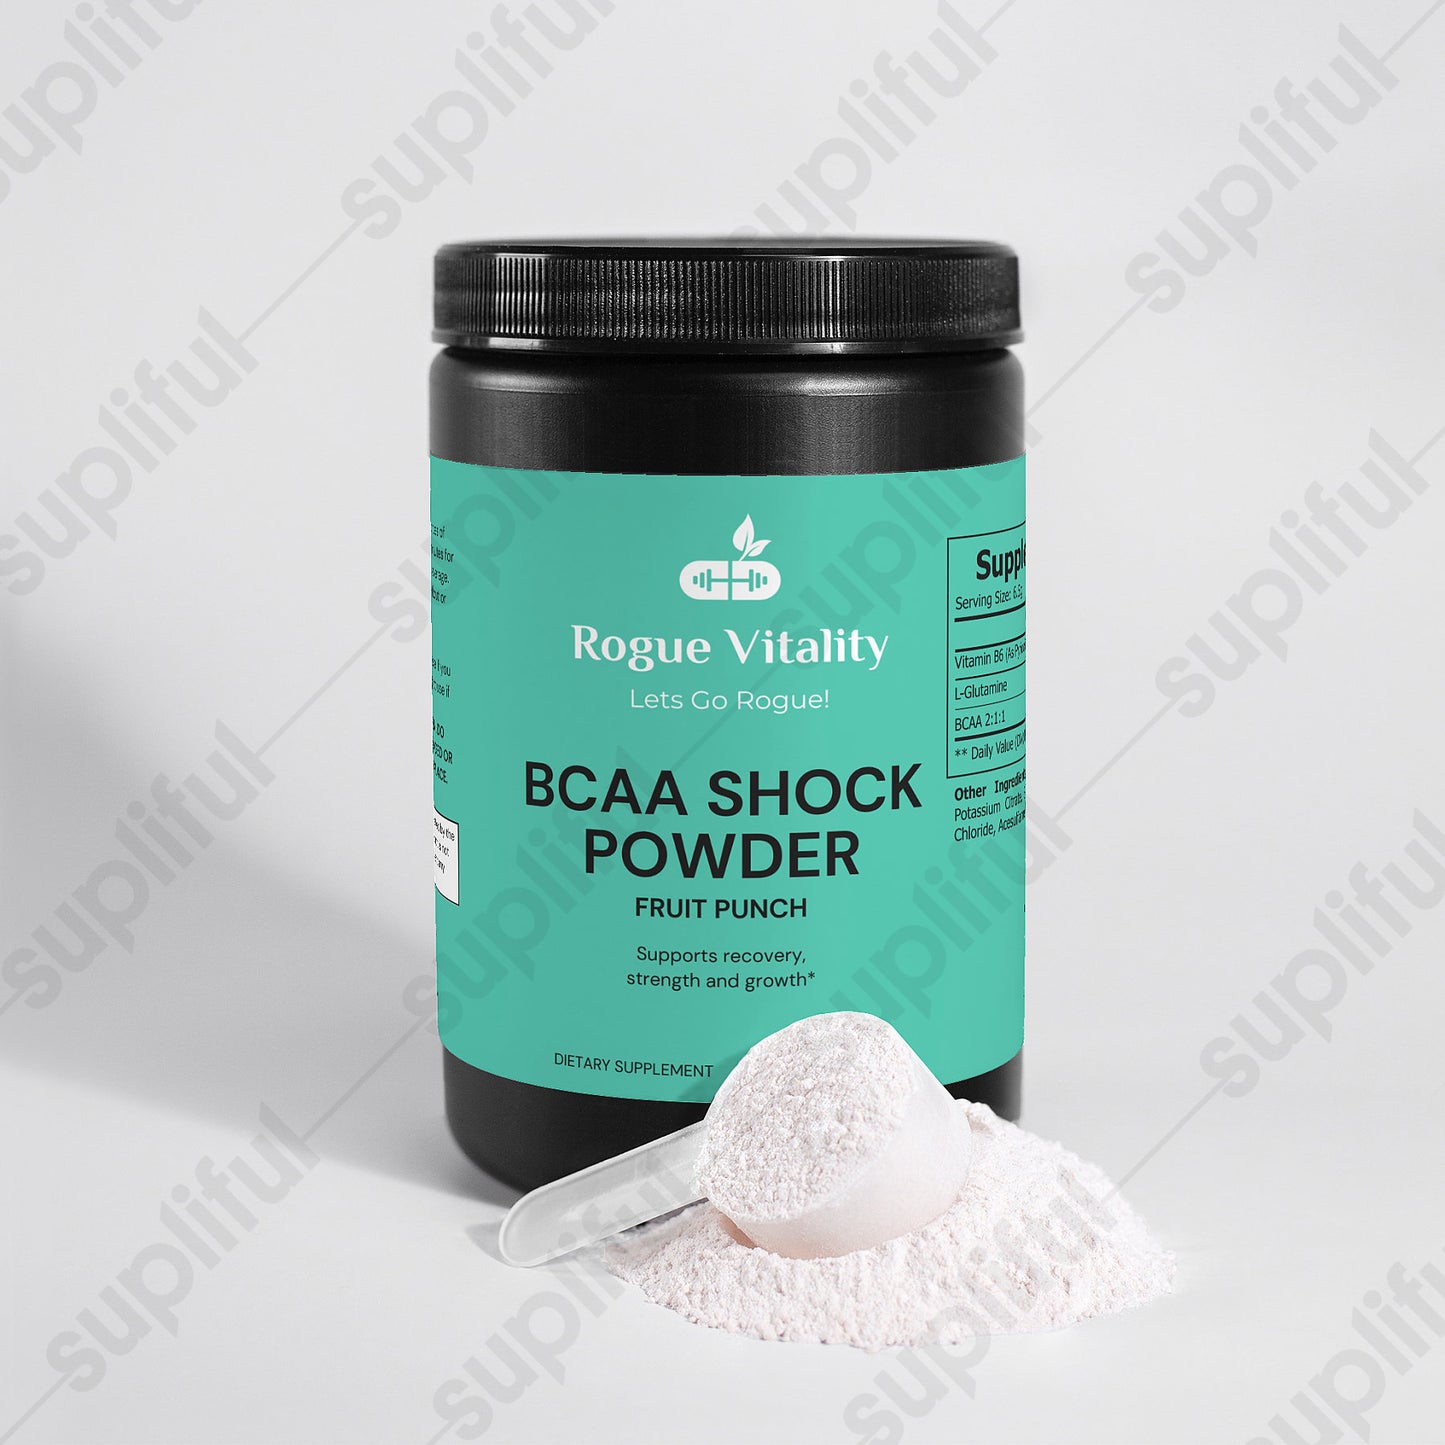 BCAA Shock Powder (Fruit Punch)